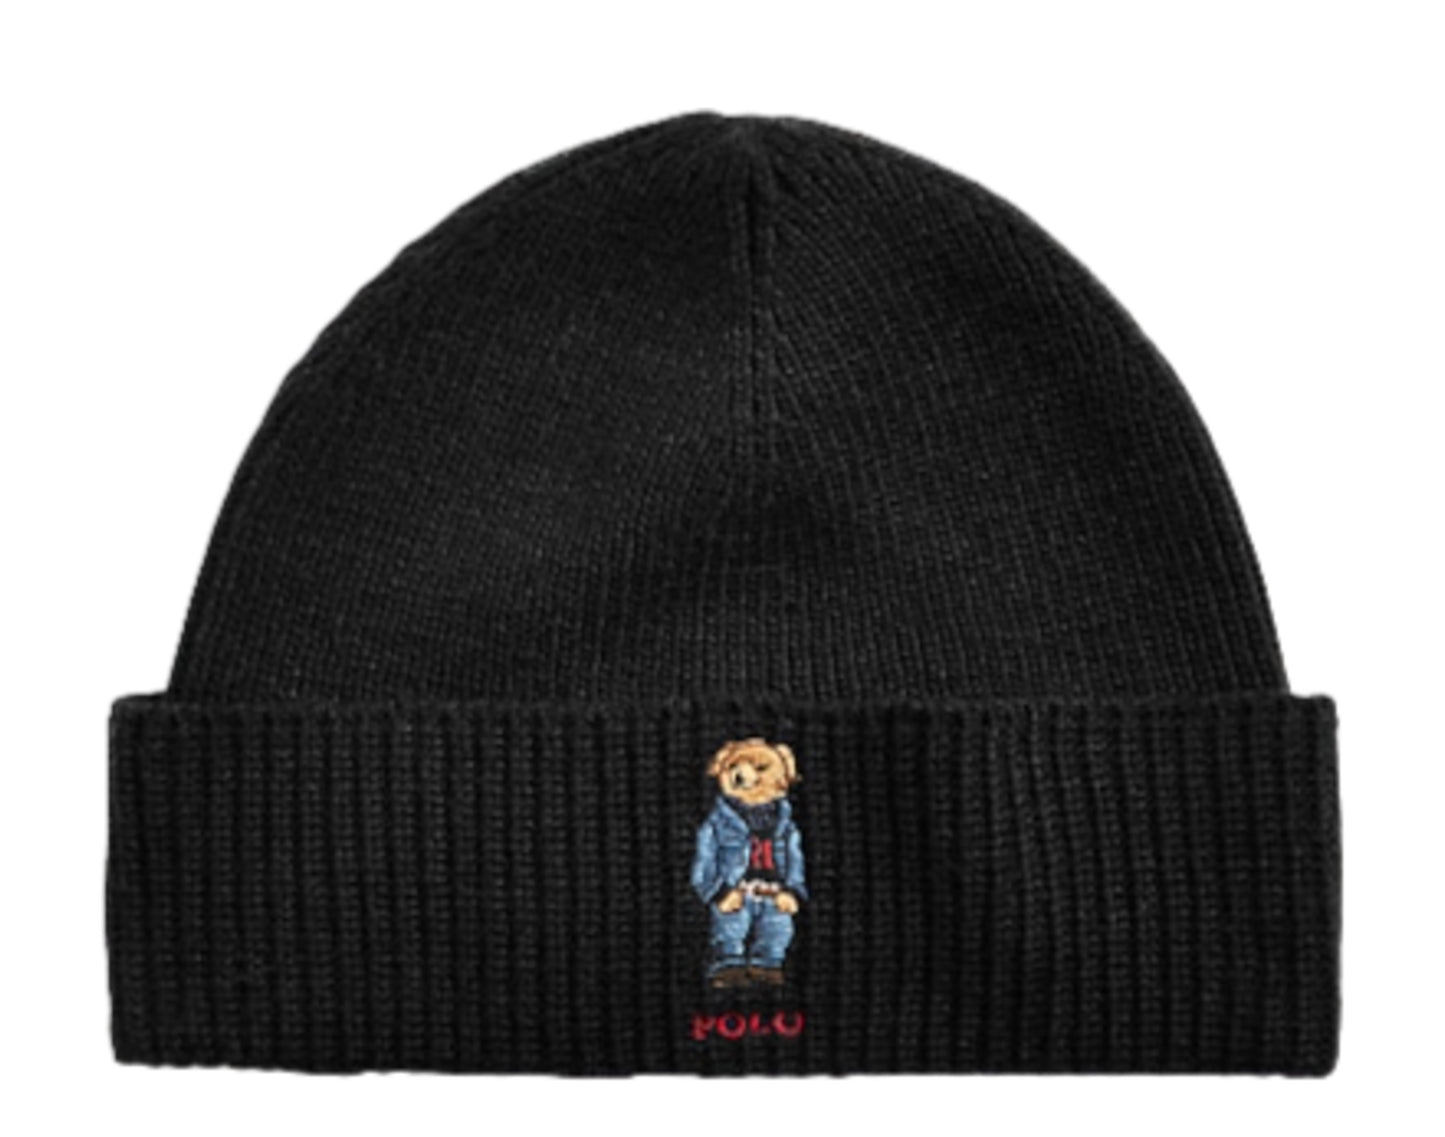 Polo Ralph Lauren Polo Bear Knit Cuffed Beanie Hat